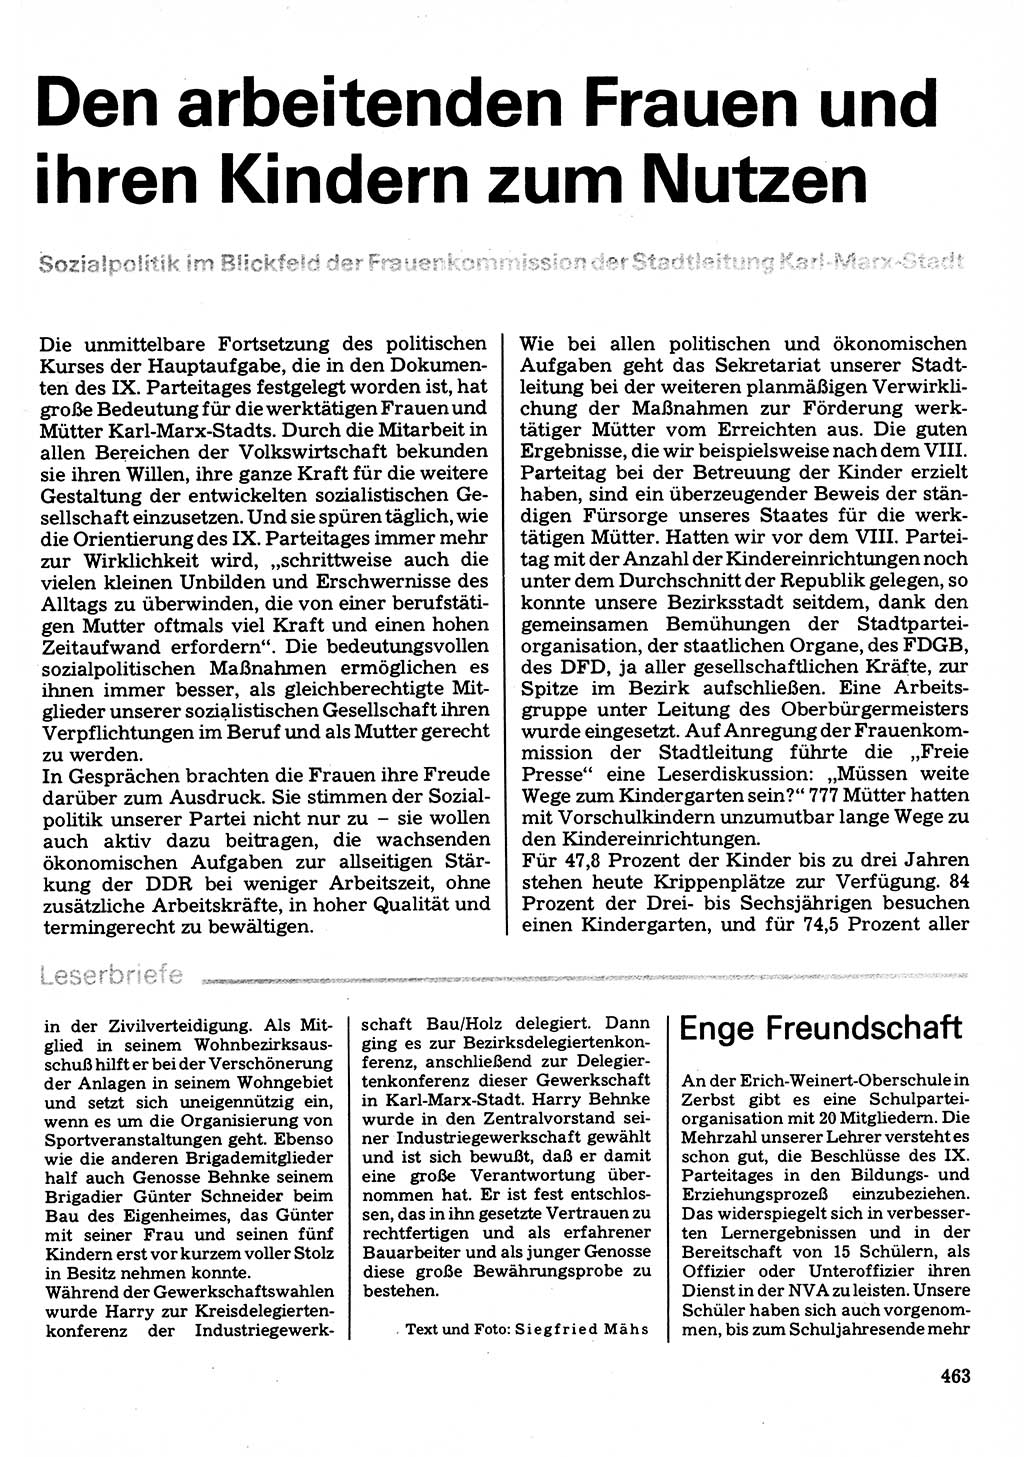 Neuer Weg (NW), Organ des Zentralkomitees (ZK) der SED (Sozialistische Einheitspartei Deutschlands) für Fragen des Parteilebens, 32. Jahrgang [Deutsche Demokratische Republik (DDR)] 1977, Seite 463 (NW ZK SED DDR 1977, S. 463)